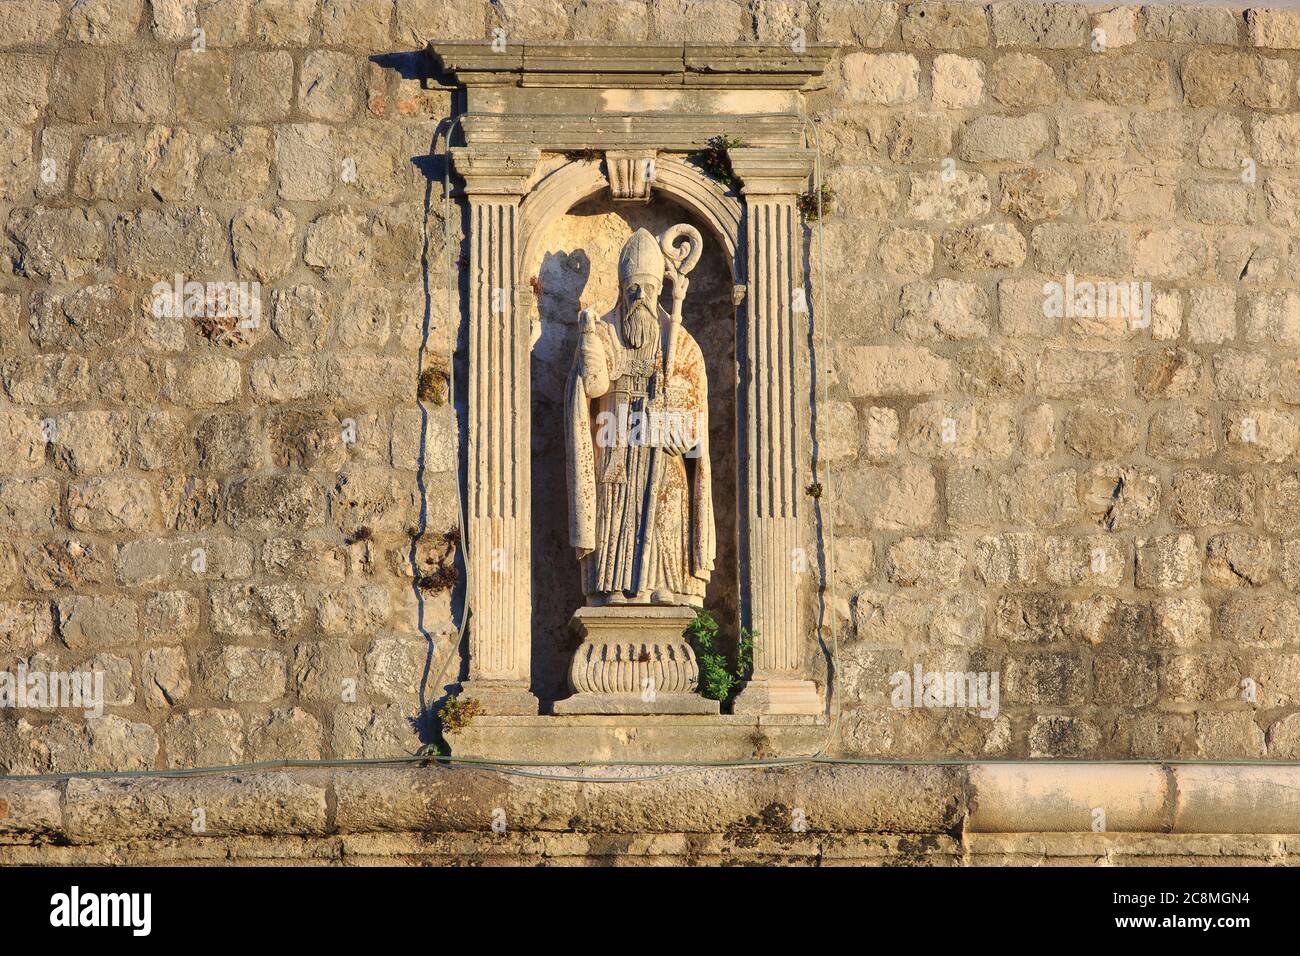 Statue de Saint Blaise, patron de Dubrovnik, au sommet de la Tour Minceta du XVe siècle (site classé au patrimoine mondial de l'UNESCO) de Dubrovnik, Croatie Banque D'Images